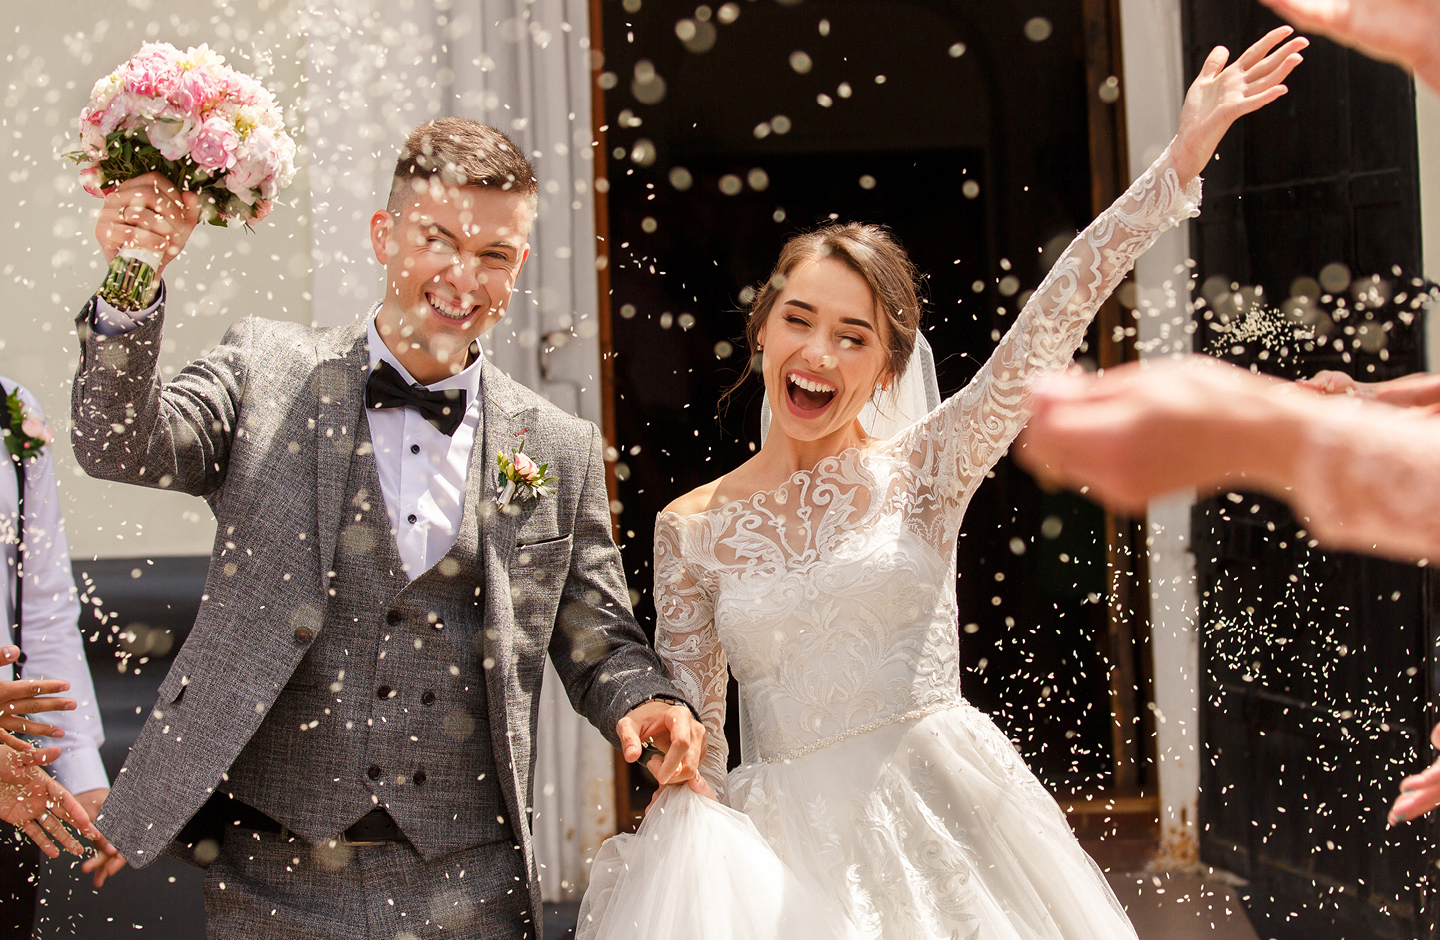 Brautpaar jubelt nach Hochzeit im Blüten-Konfettiregen ohne Hochzeitstauben